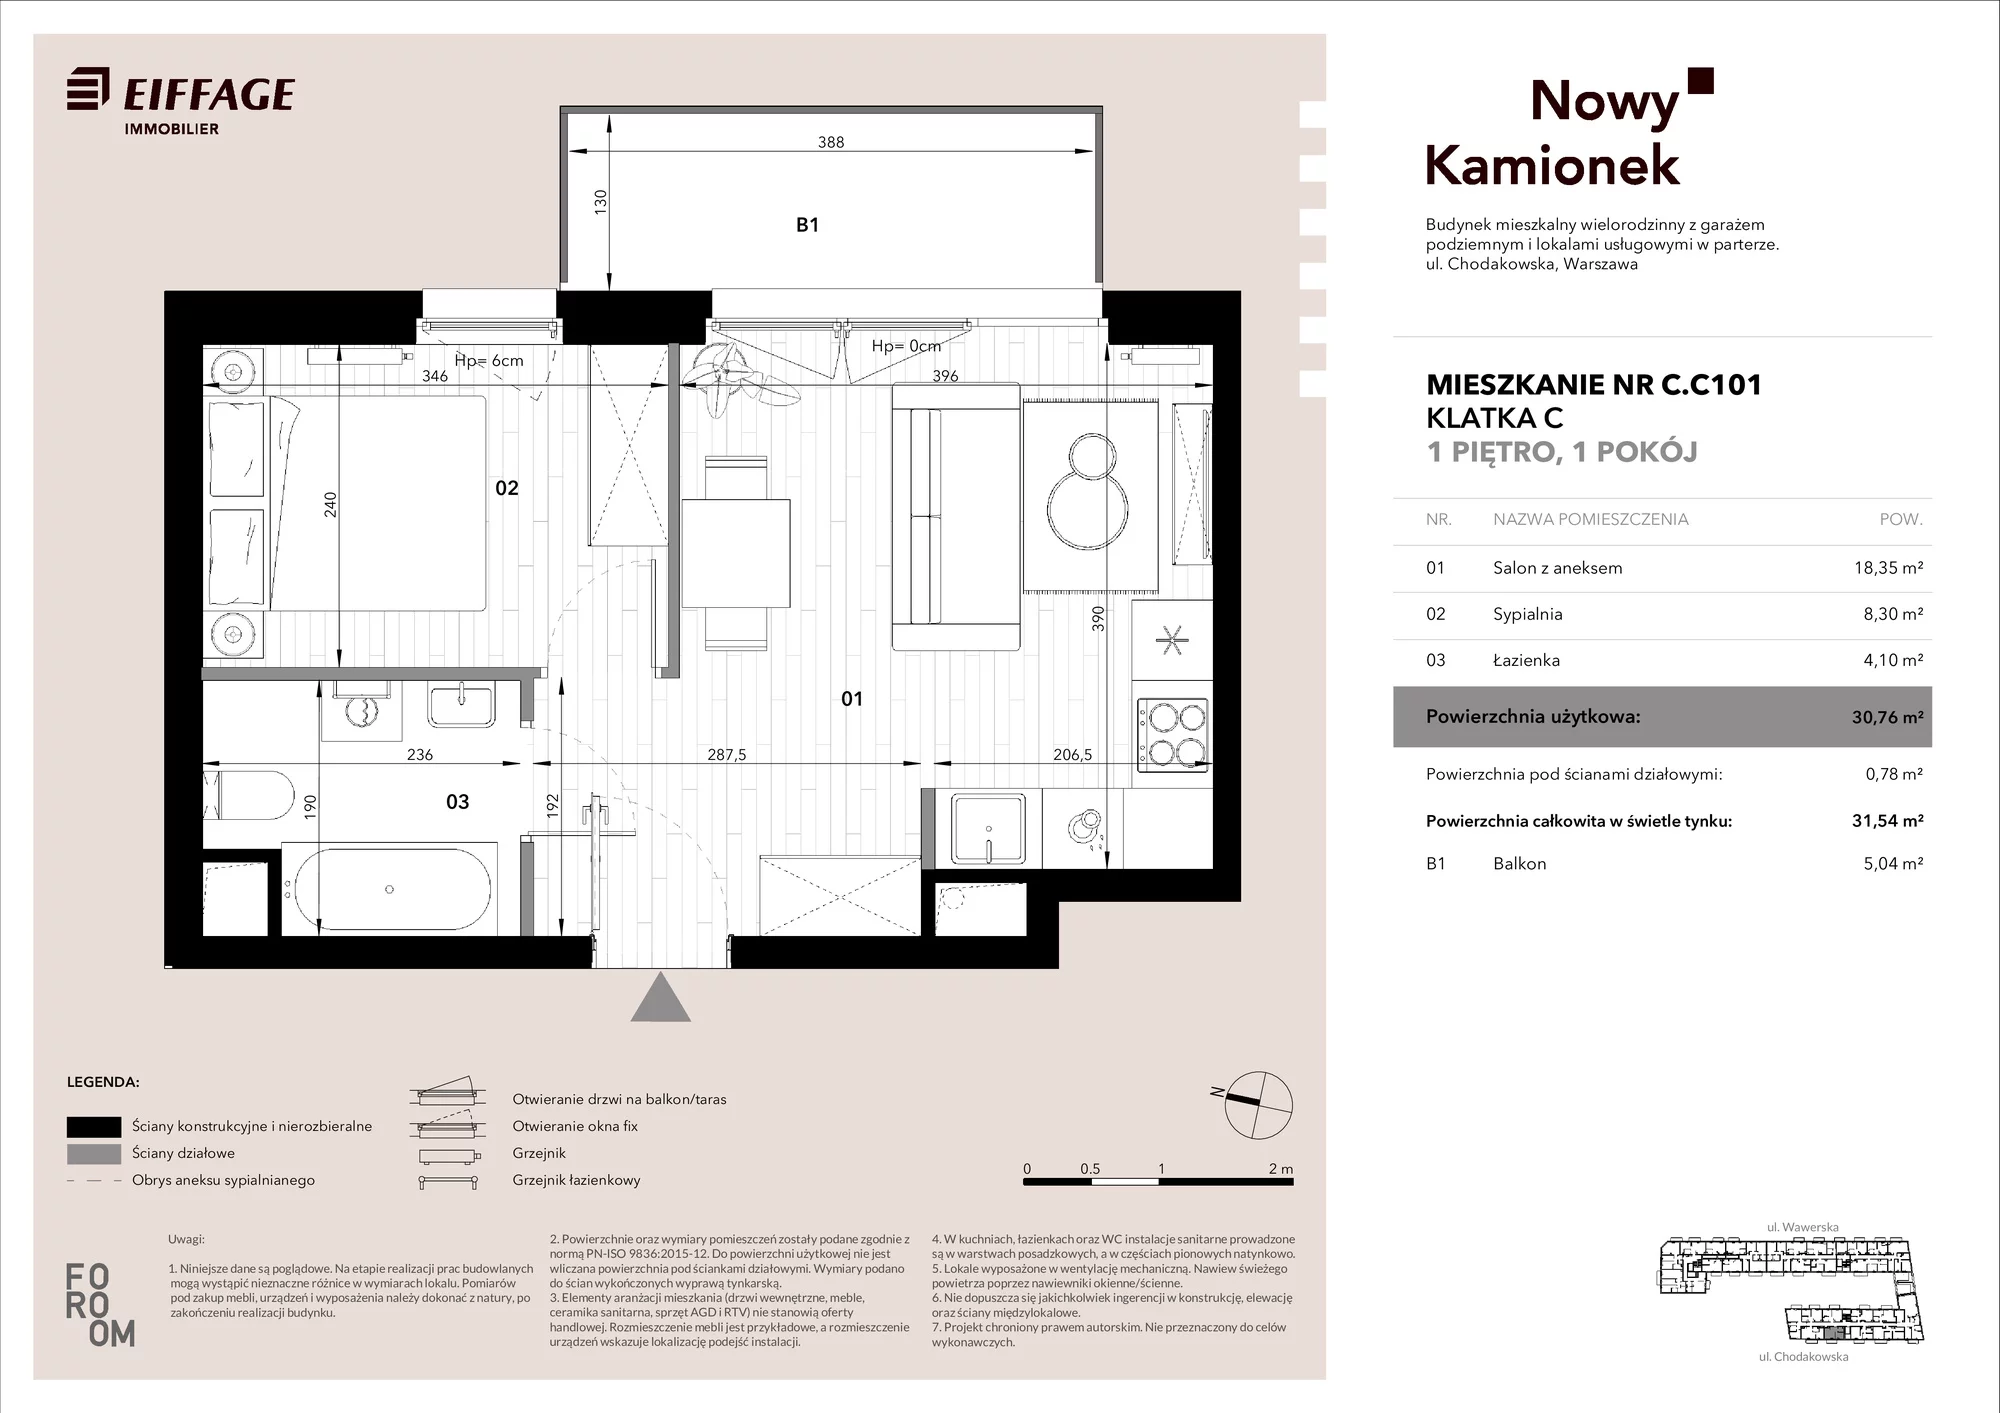 Mieszkanie 30,76 m², piętro 1, oferta nr C.C101, Nowy Kamionek, Warszawa, Praga Południe, Kamionek, ul. Chodakowska